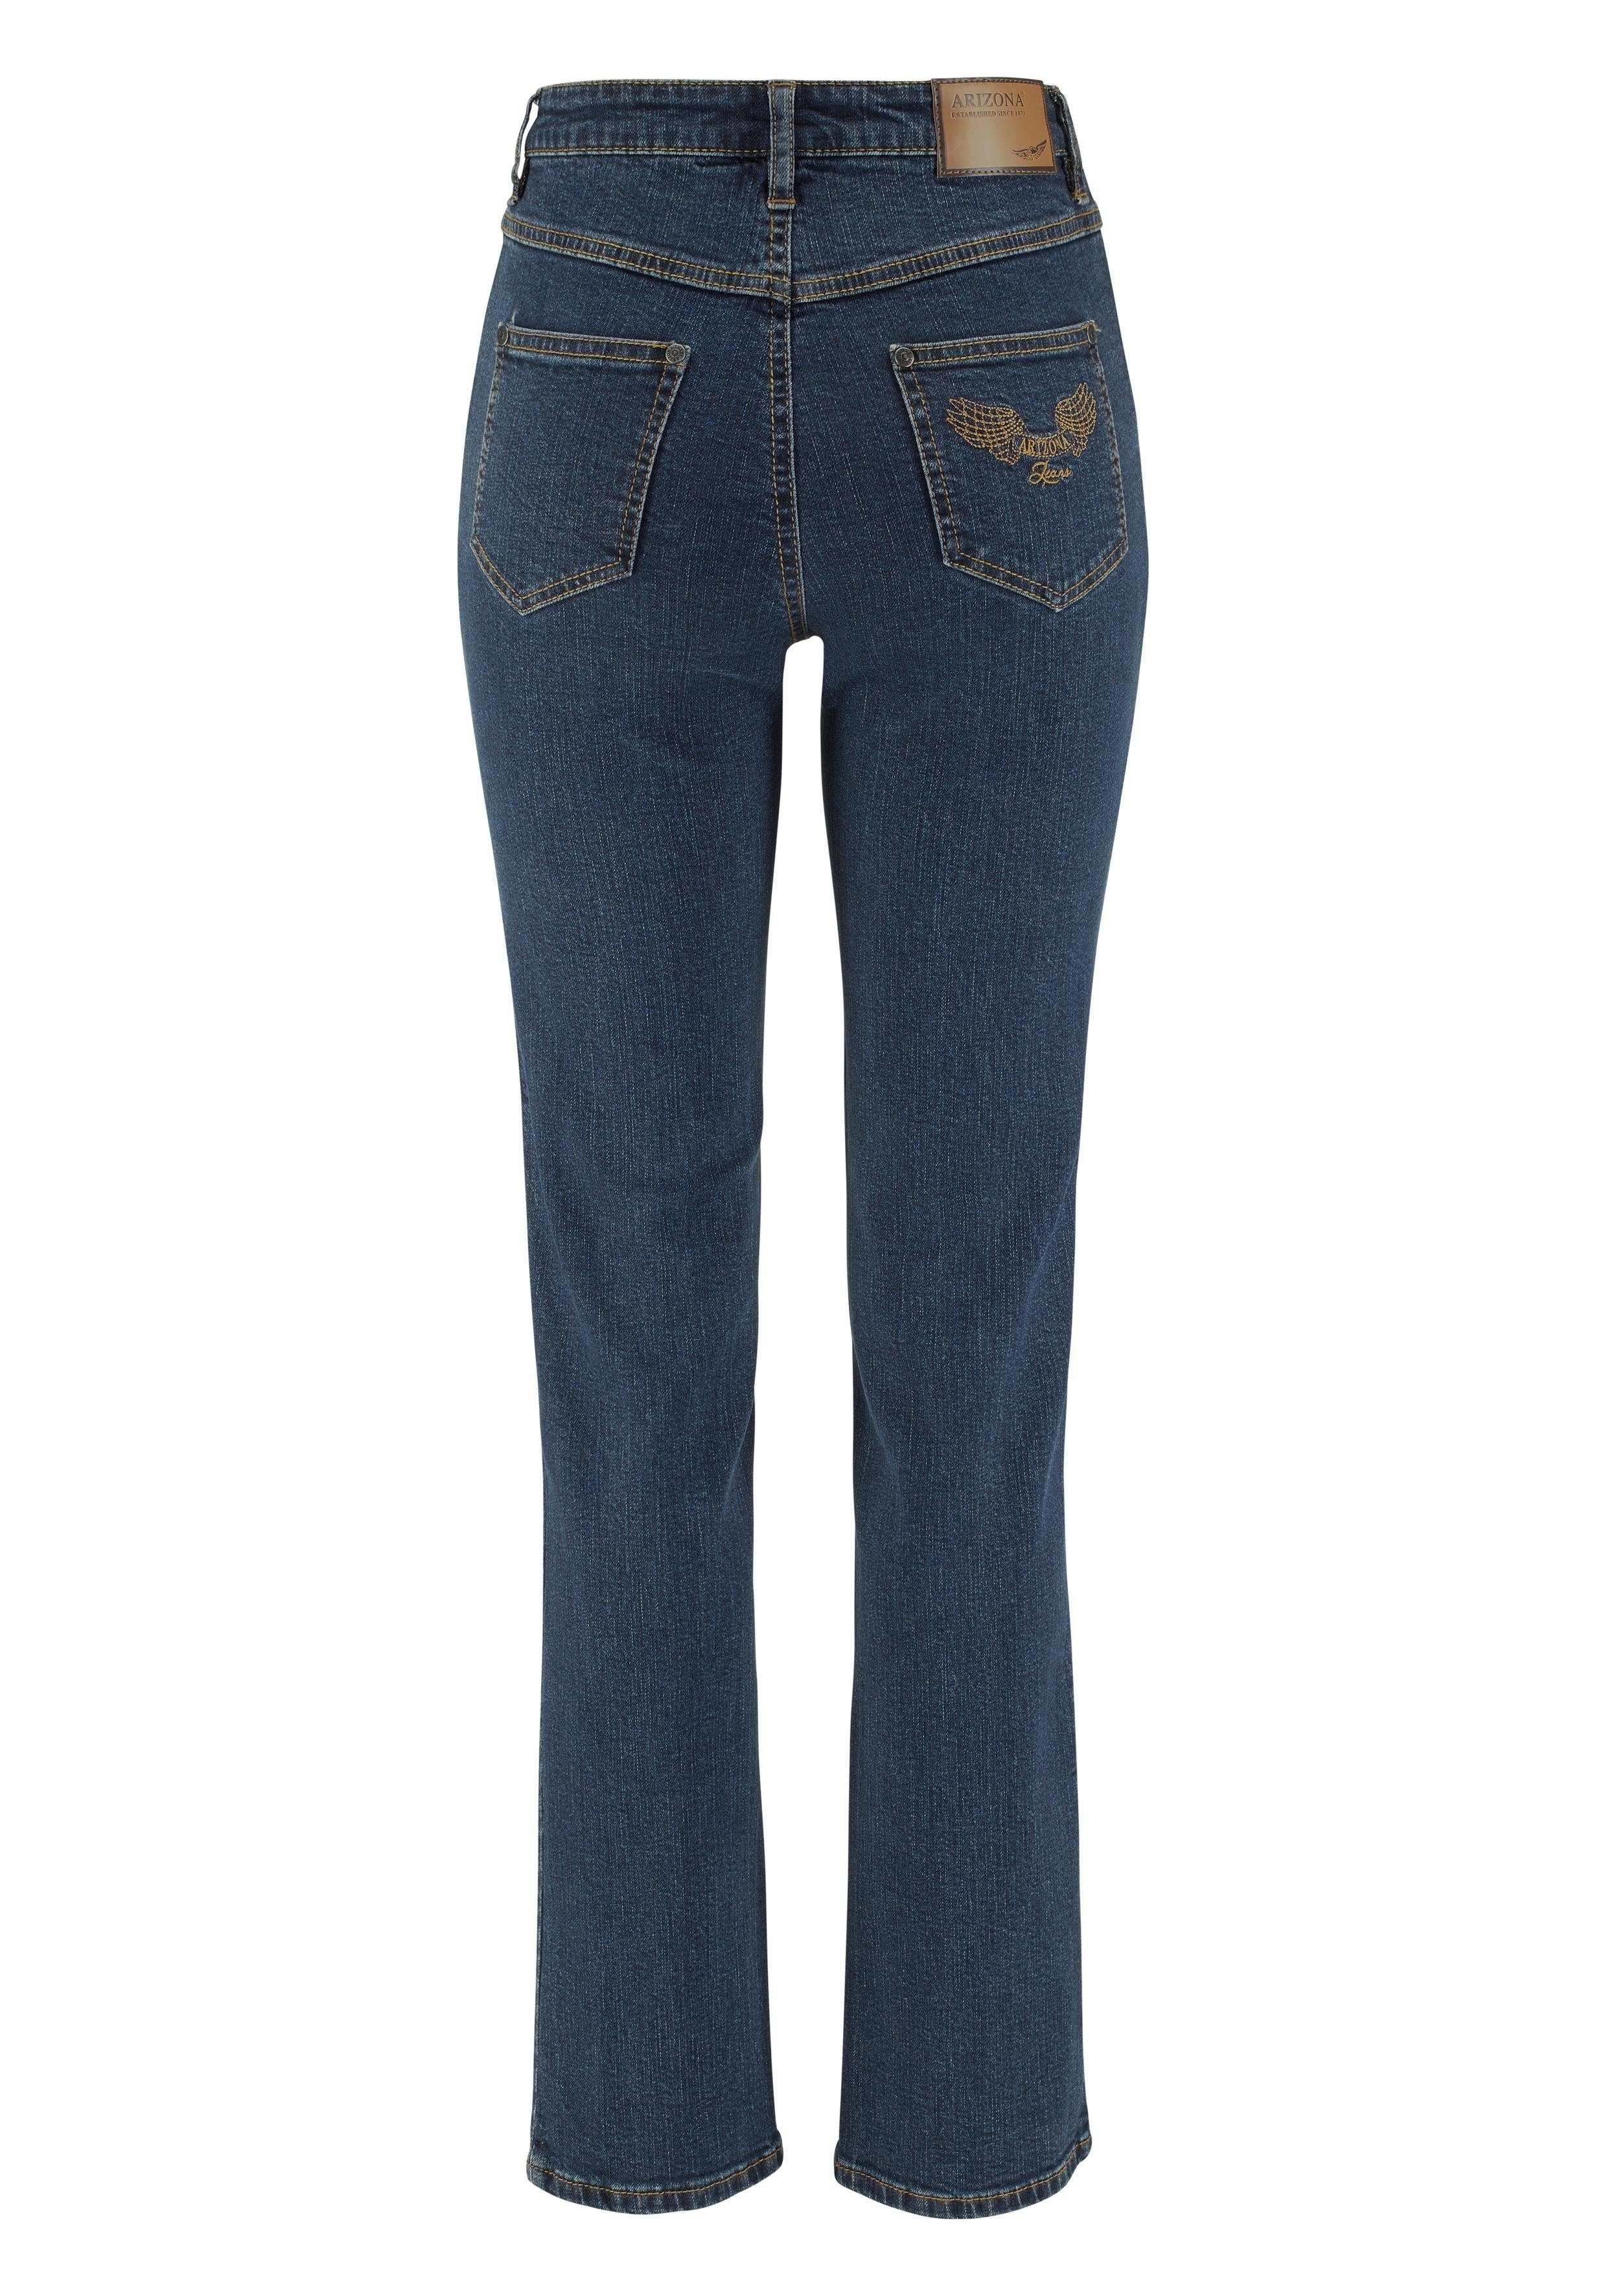 Arizona Jeans Waist Comfort-Fit WITT Gerade blue-stone WEIDEN High